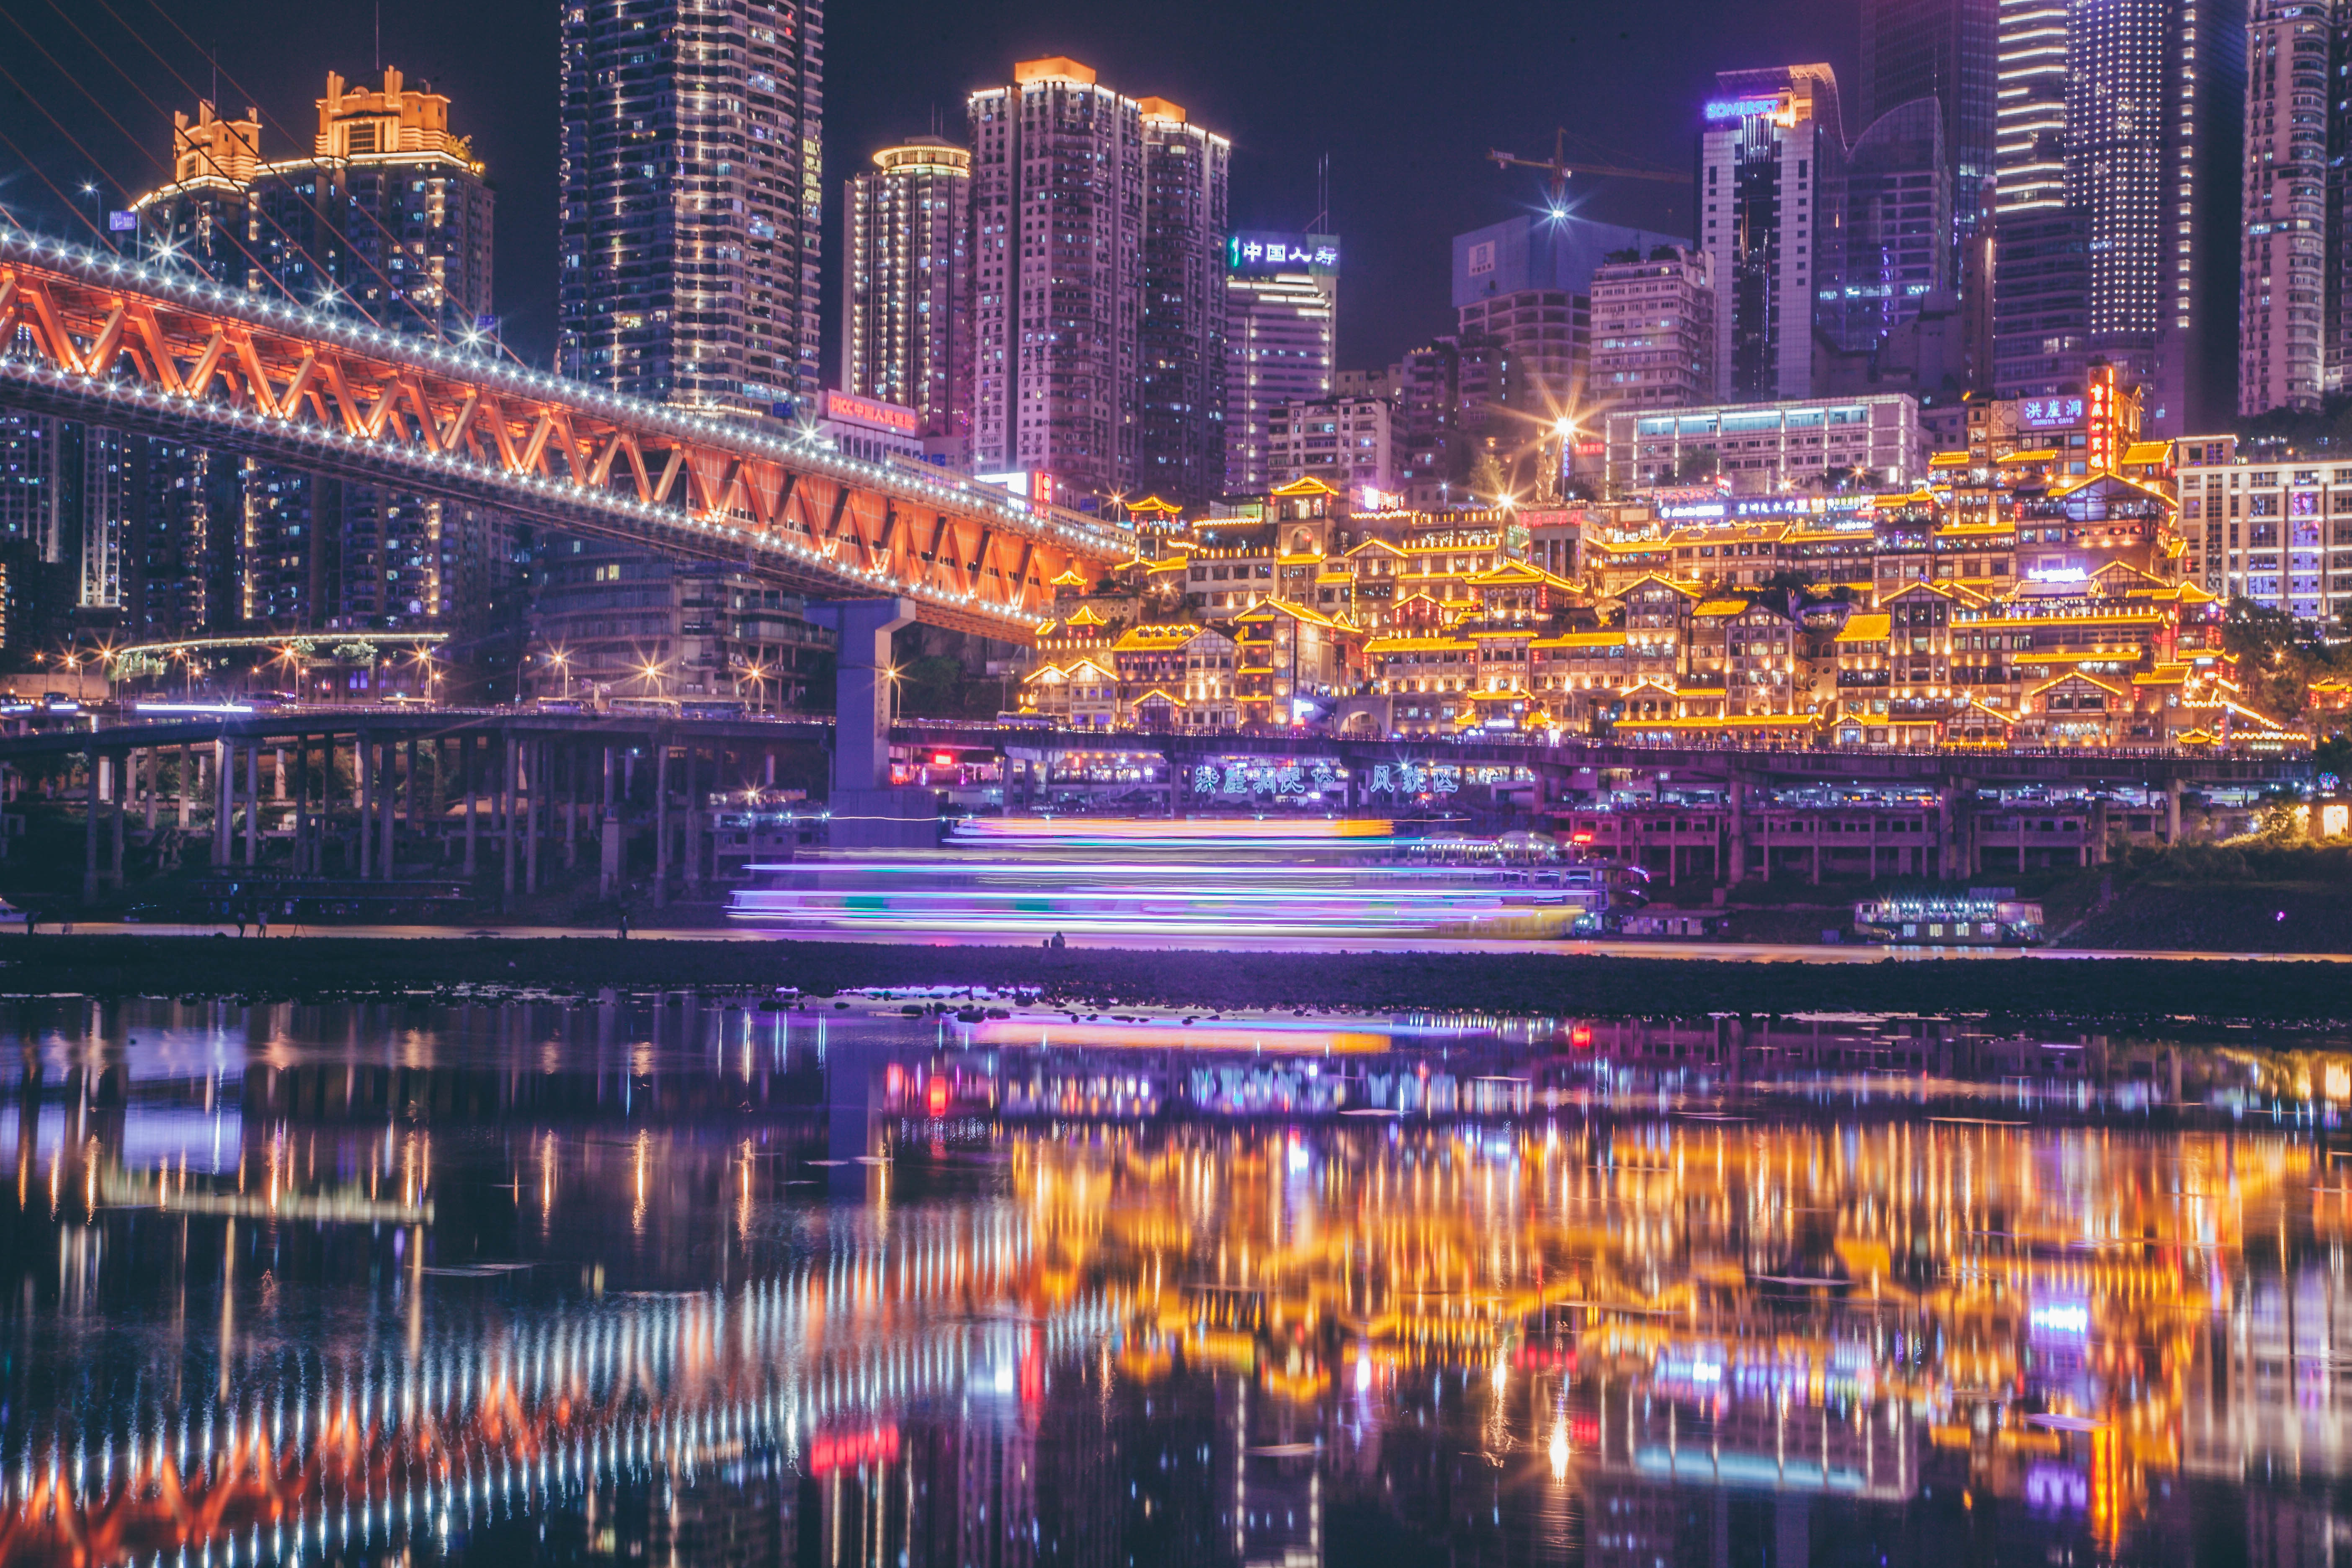 摄影手记#1:网红重庆夜景这么拍才叫带劲儿,刷